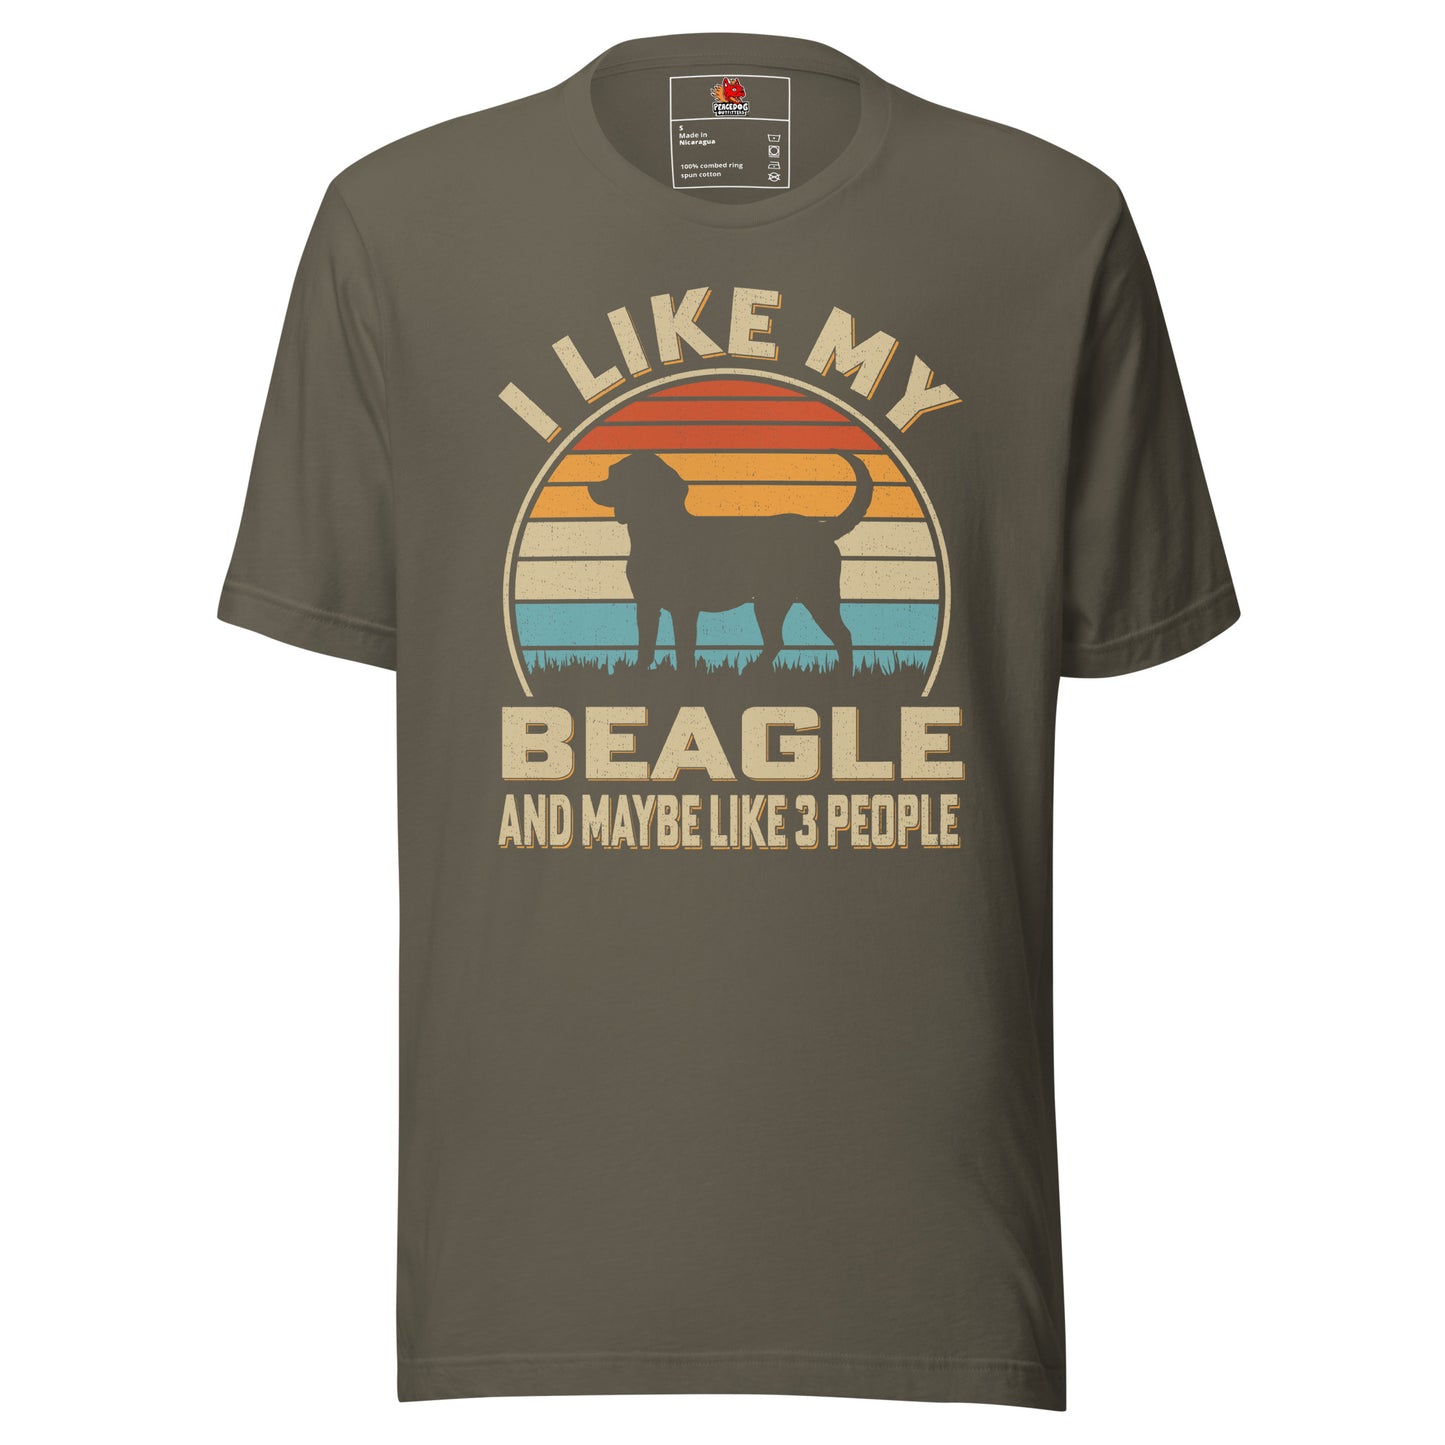 Retro Dog Sunset "I Like My Beagle" T-shirt